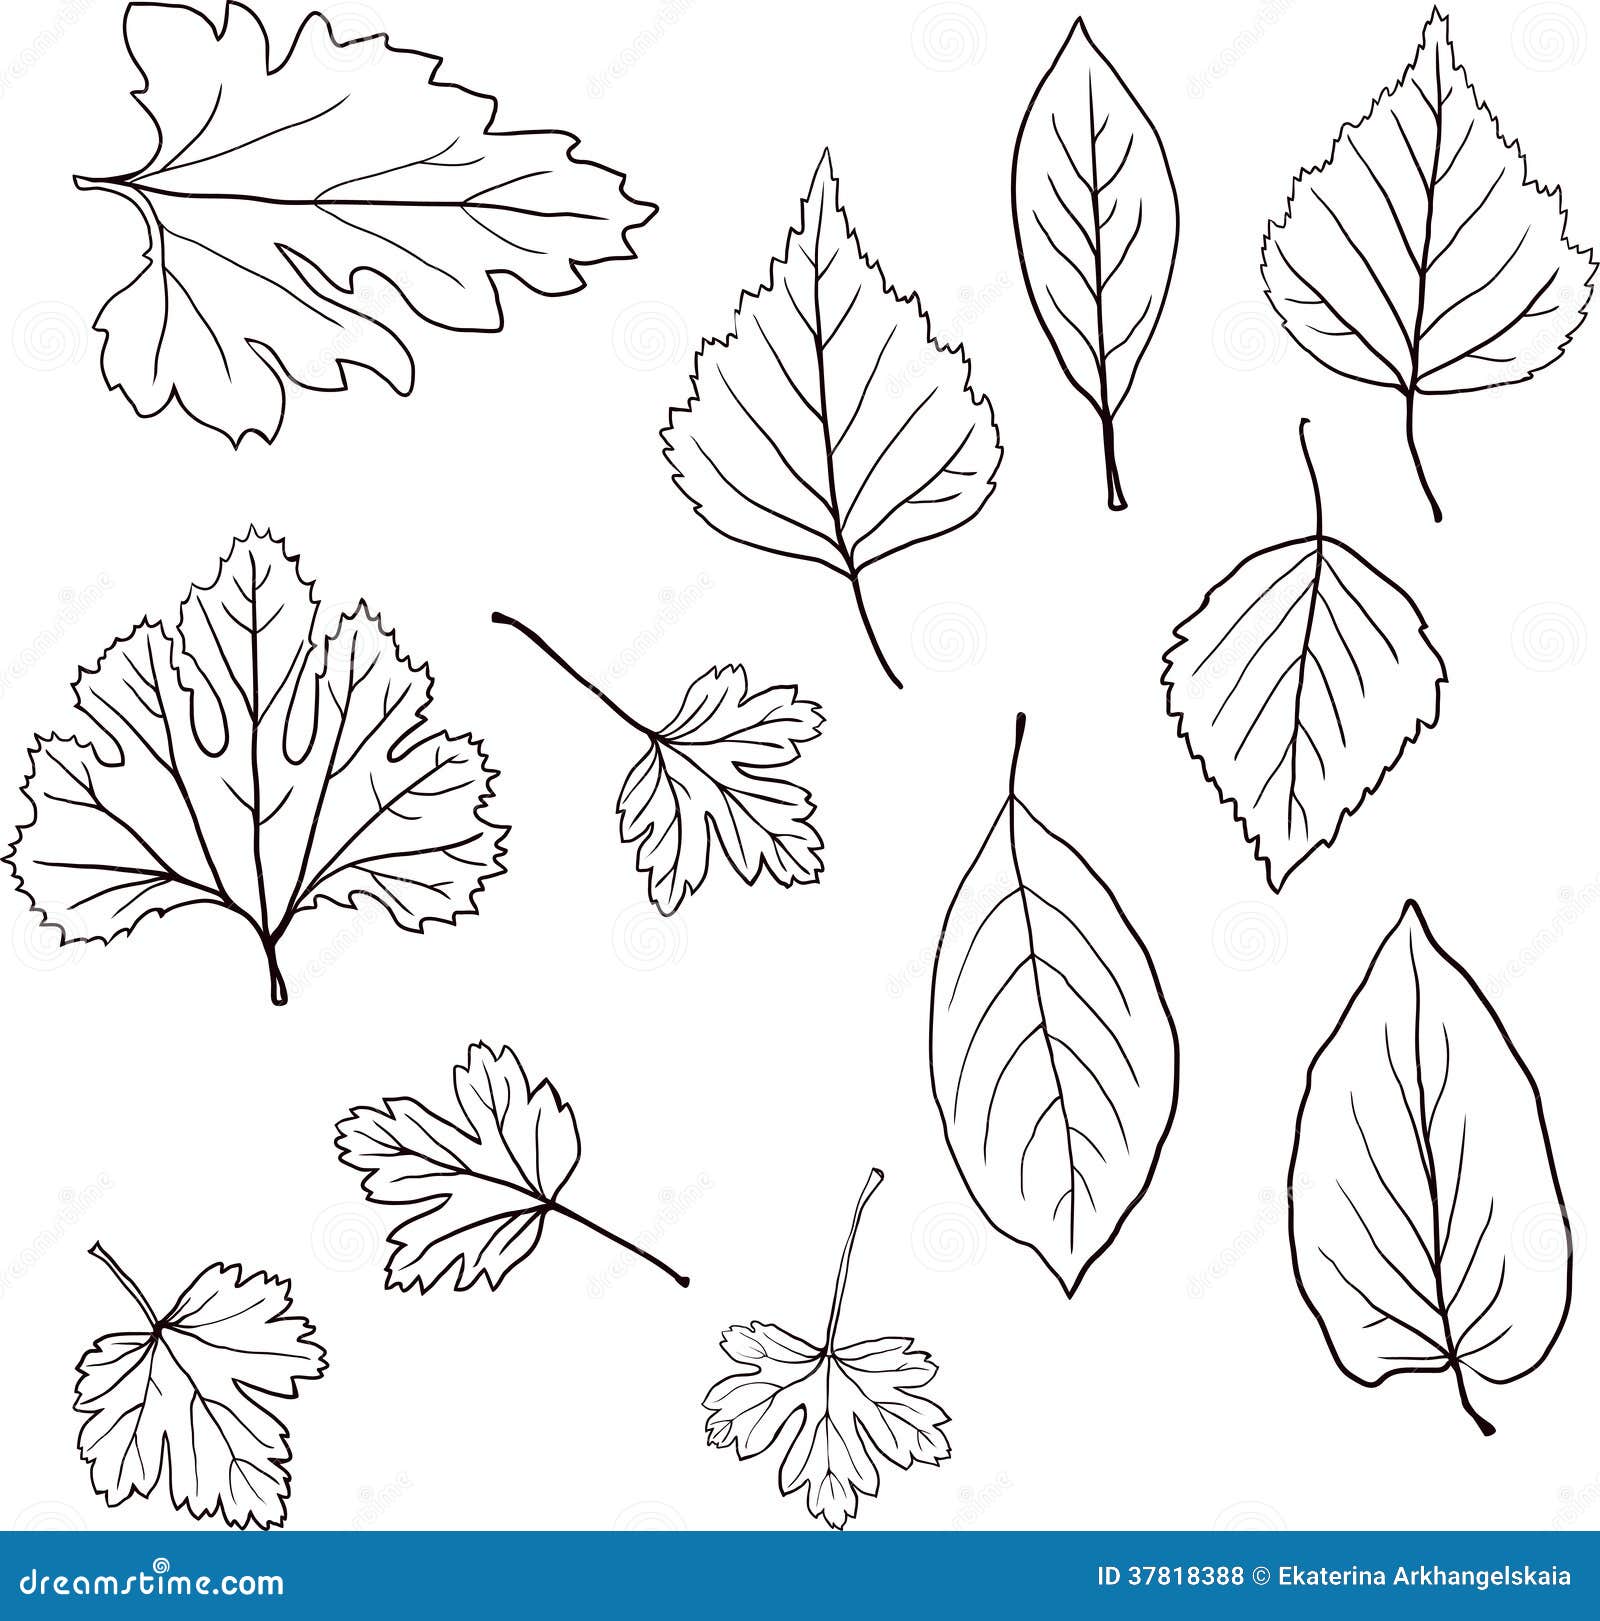 Чертеж листьев. Лист для чертежа. Листочек чертеж. Линейный рисунок листьев. Линейные иллюстрации листья.